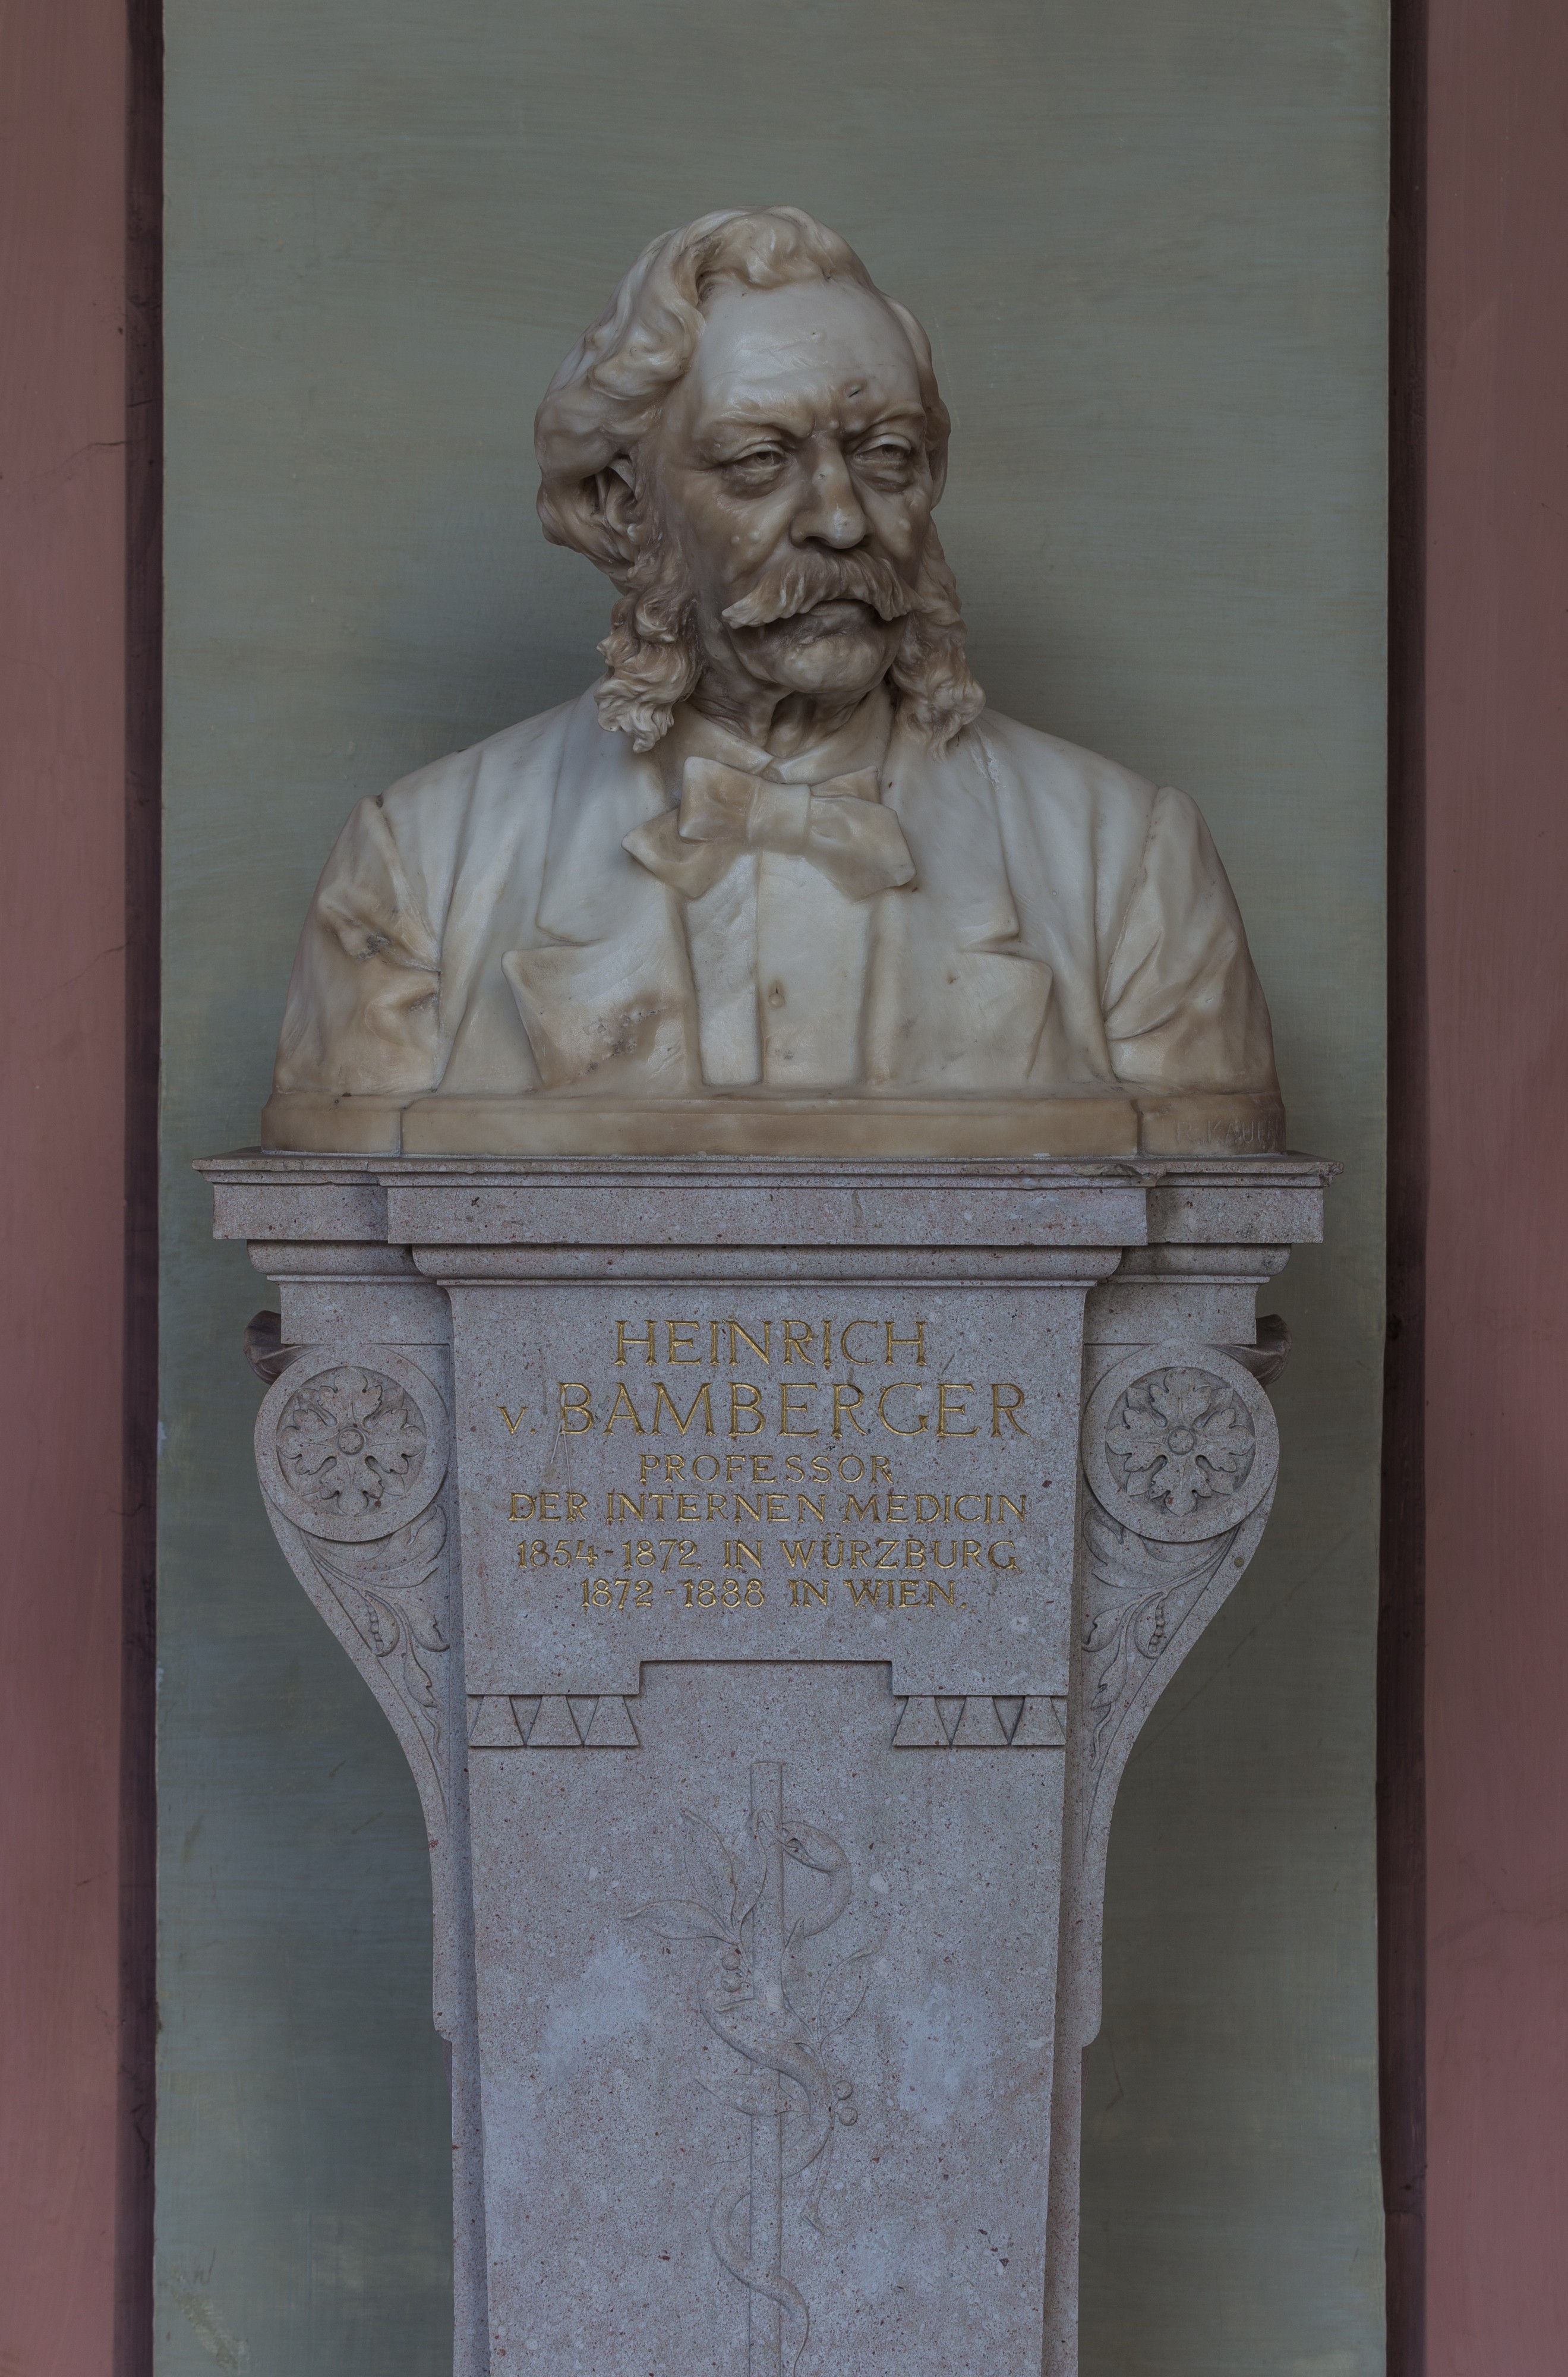 Heinrich von Bamberger (1822-1888), Nr. 70 bust (marble) in the Arkadenhof of the University of Vienna-1291